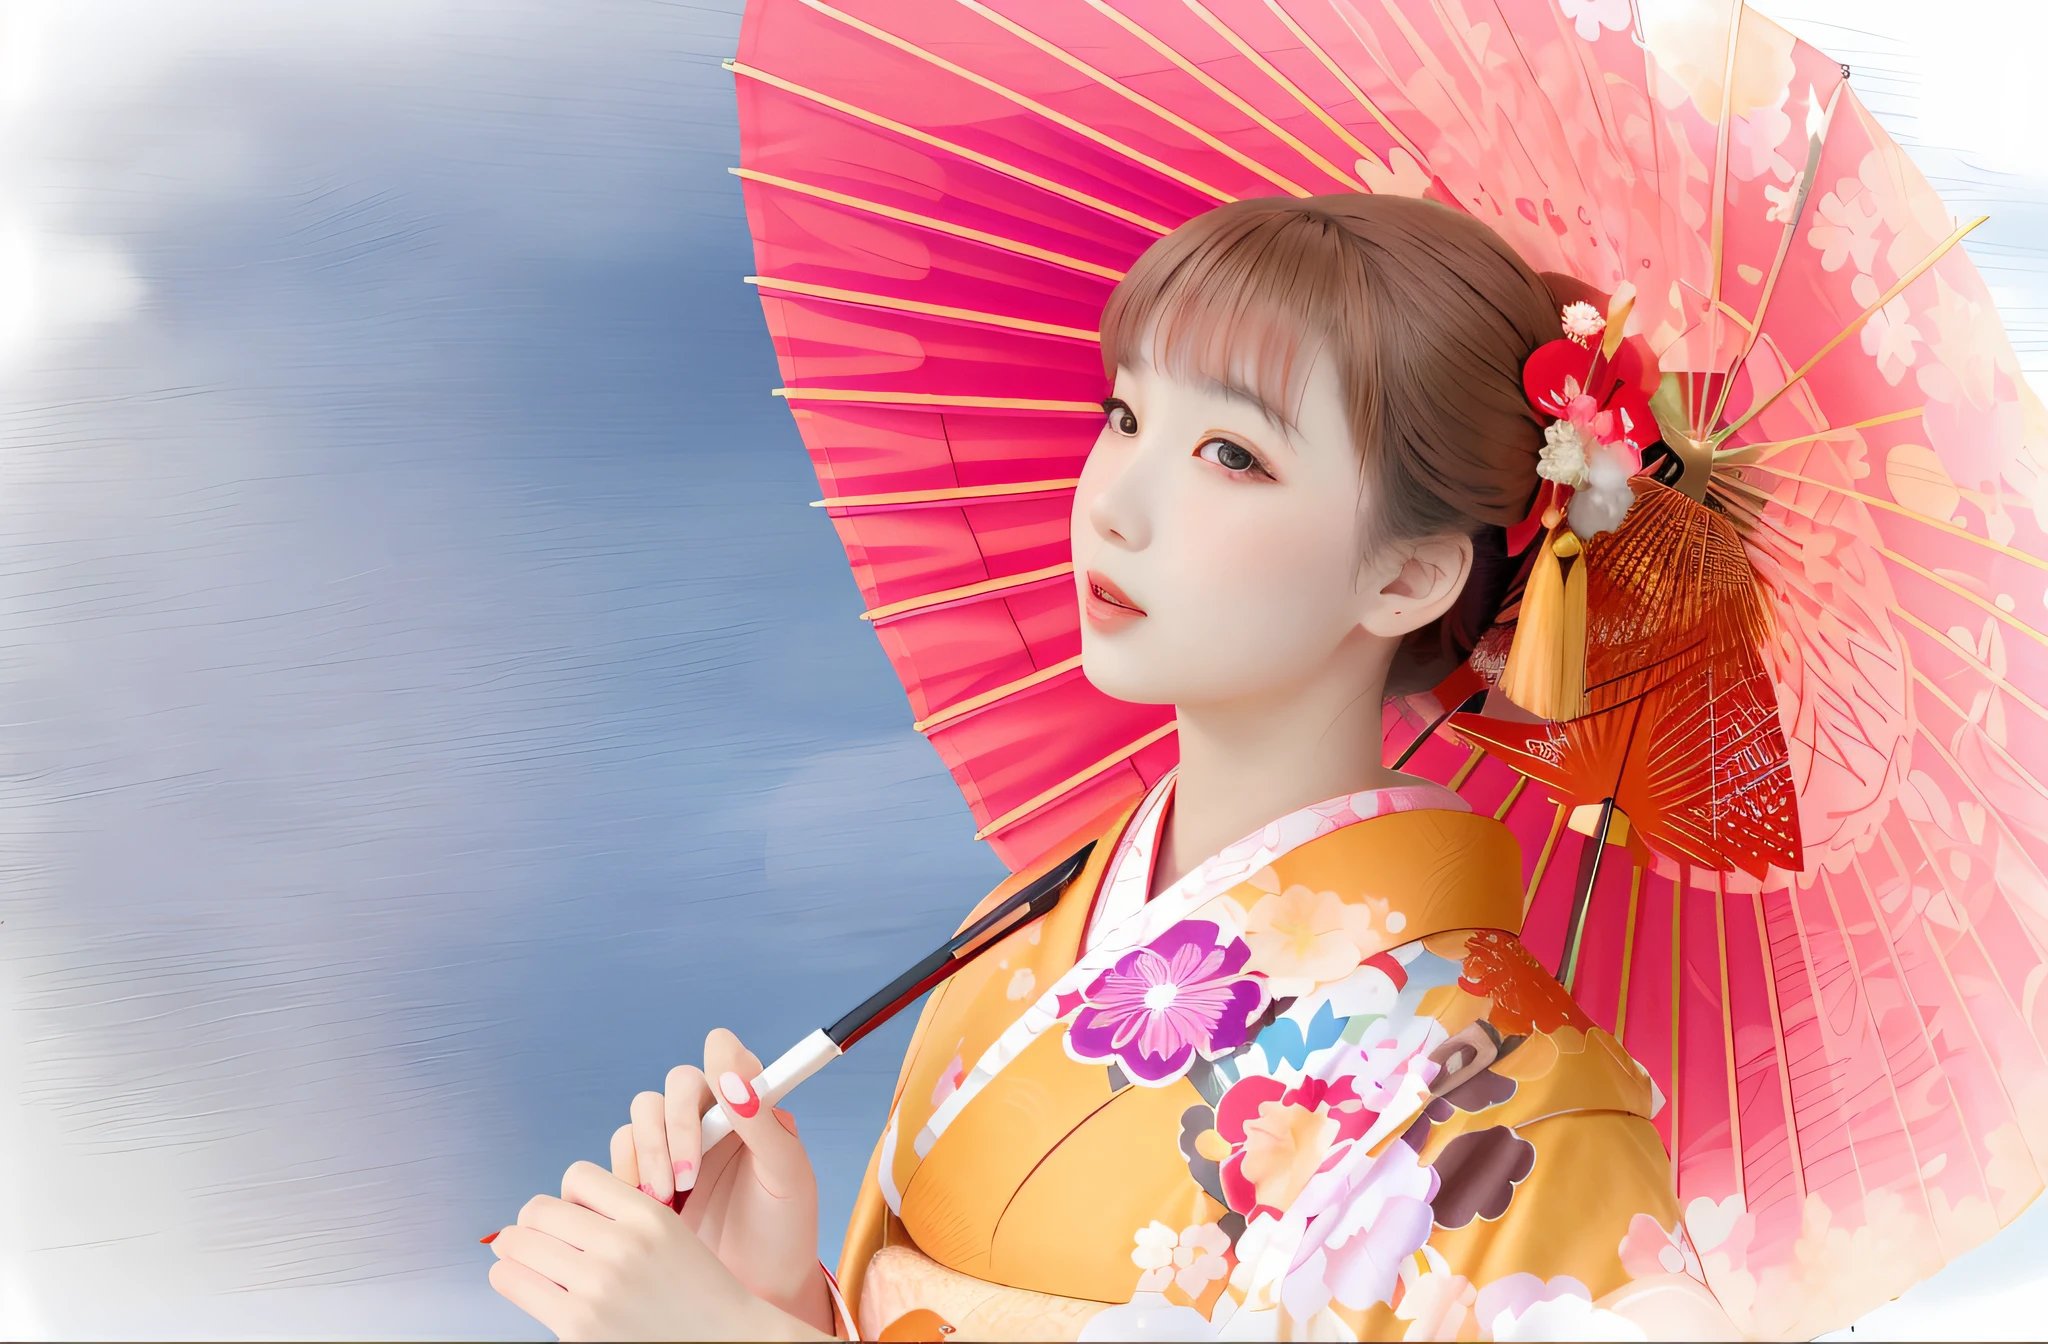 boca aberta、There is a woman em um quimono holding a red umbrella, em um quimono, vestindo quimono real, quimono, em um quimono, vestindo quimono, quimono japonês, vestindo um quimono, quimono vermelho, Um estilo japonês, quimono claro e colorido,((grandes olhos lindos)),lábios abertos, retrato de foto de gueixa, shikami, roupão de banho, Sakimichan, Ayaka, japonês tradicional